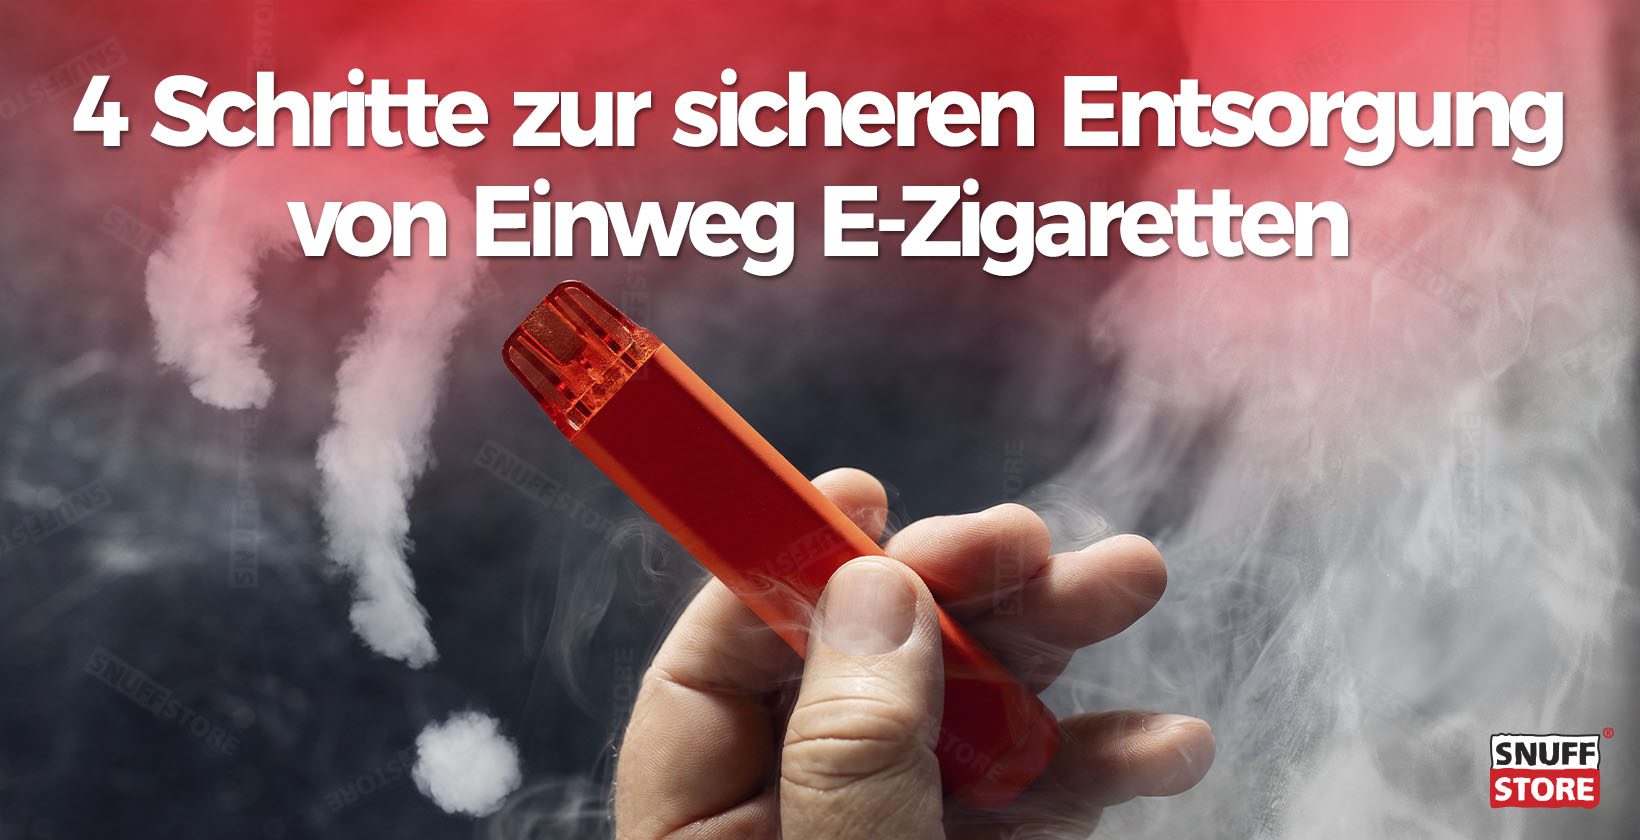 Sicheren entsorgung von Einweg E-Zigaretten